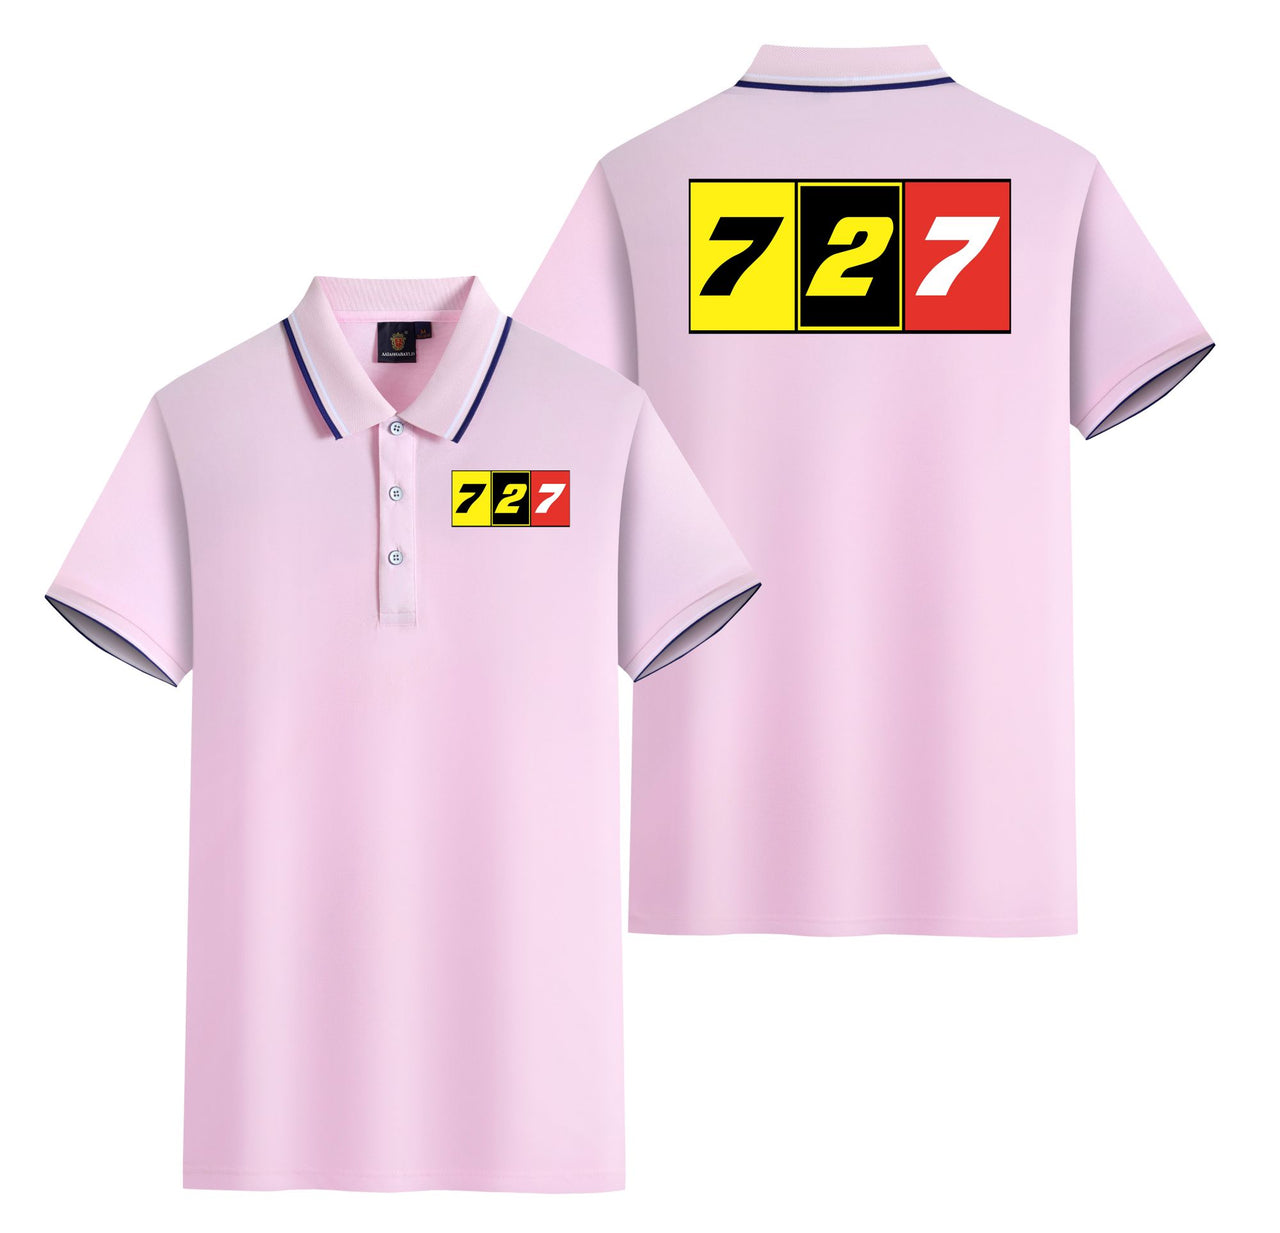 Flat Colourful 727 Designed Stylish Polo T-Shirts (Double-Side)